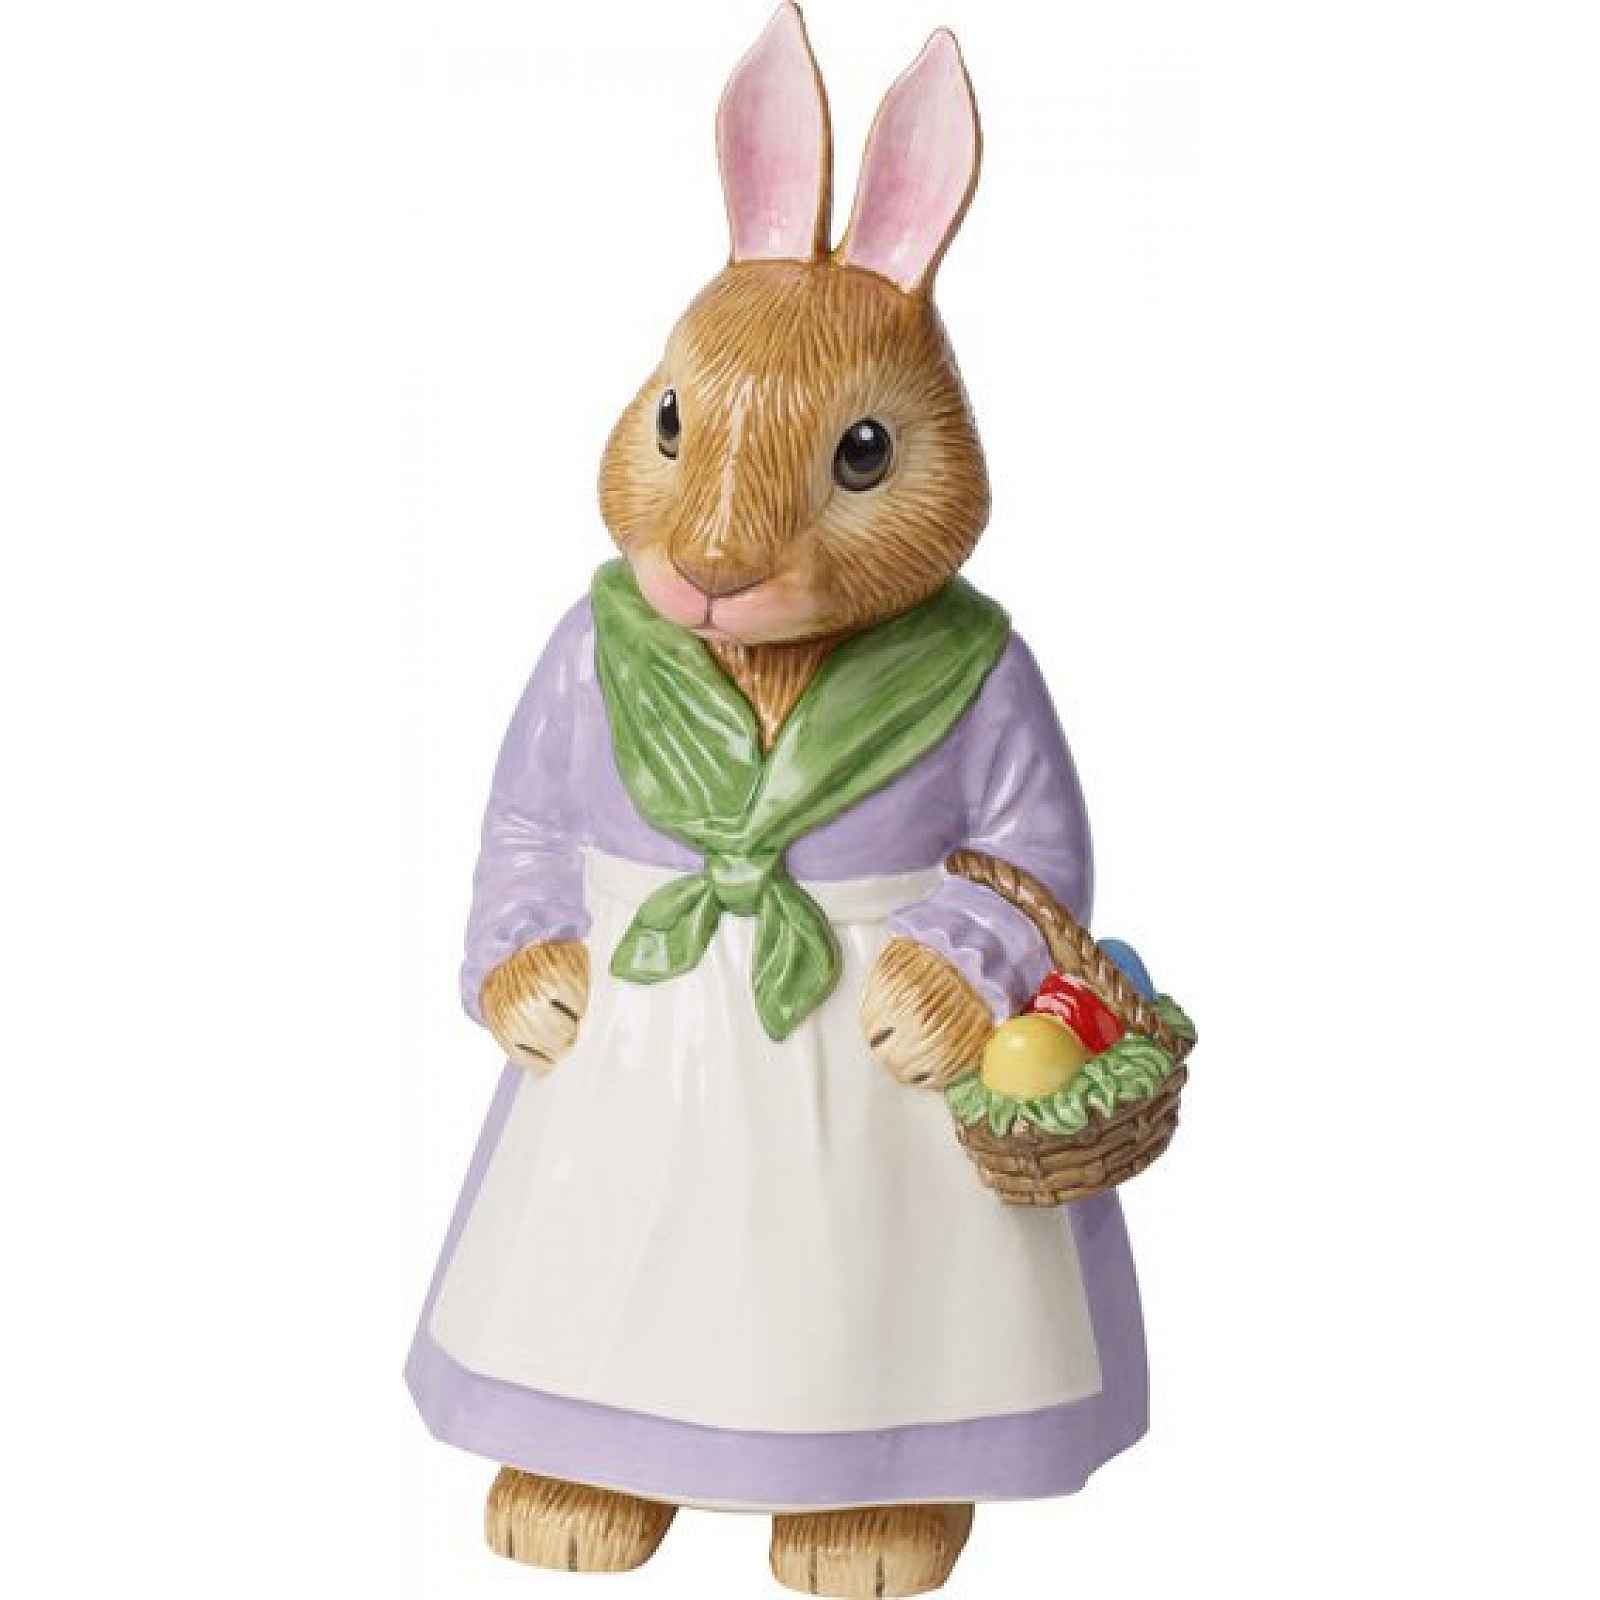 Villeroy & Boch Bunny Tales velká porcelánová zaječice babička Emma